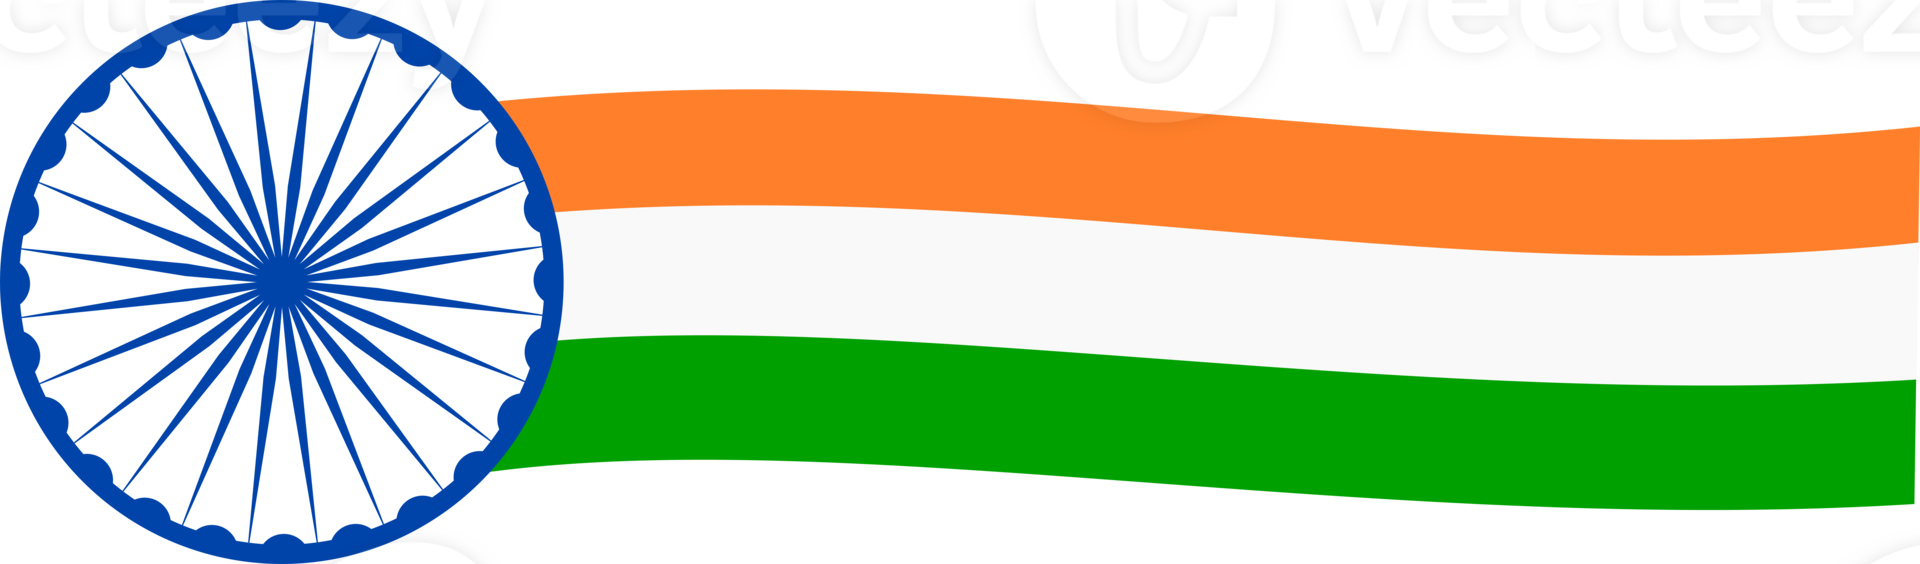 diseño de la bandera india png